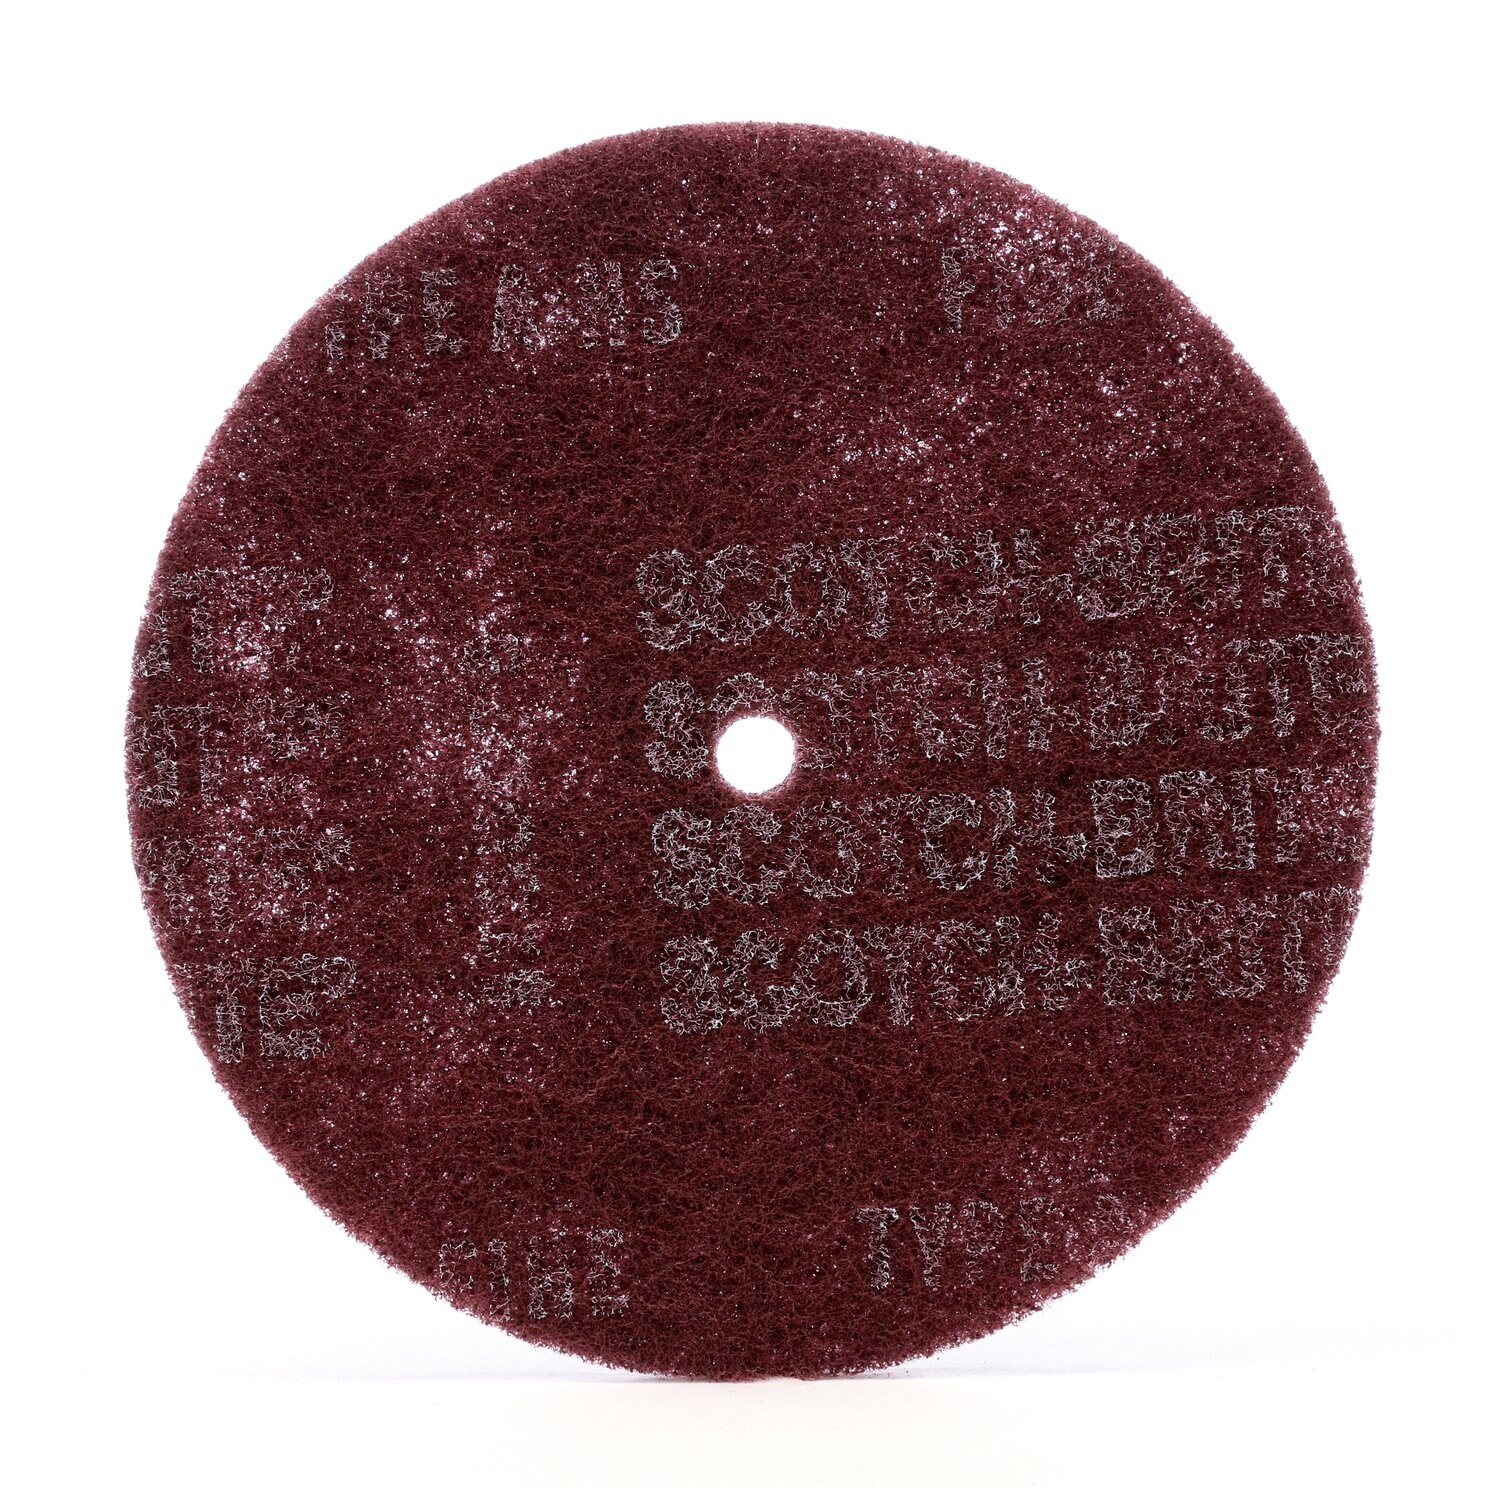 7010329603 - Scotch-Brite High Strength Disc, HS-DC, A/O Very Fine, 4 in x 1/8 in,
150 ea/Case